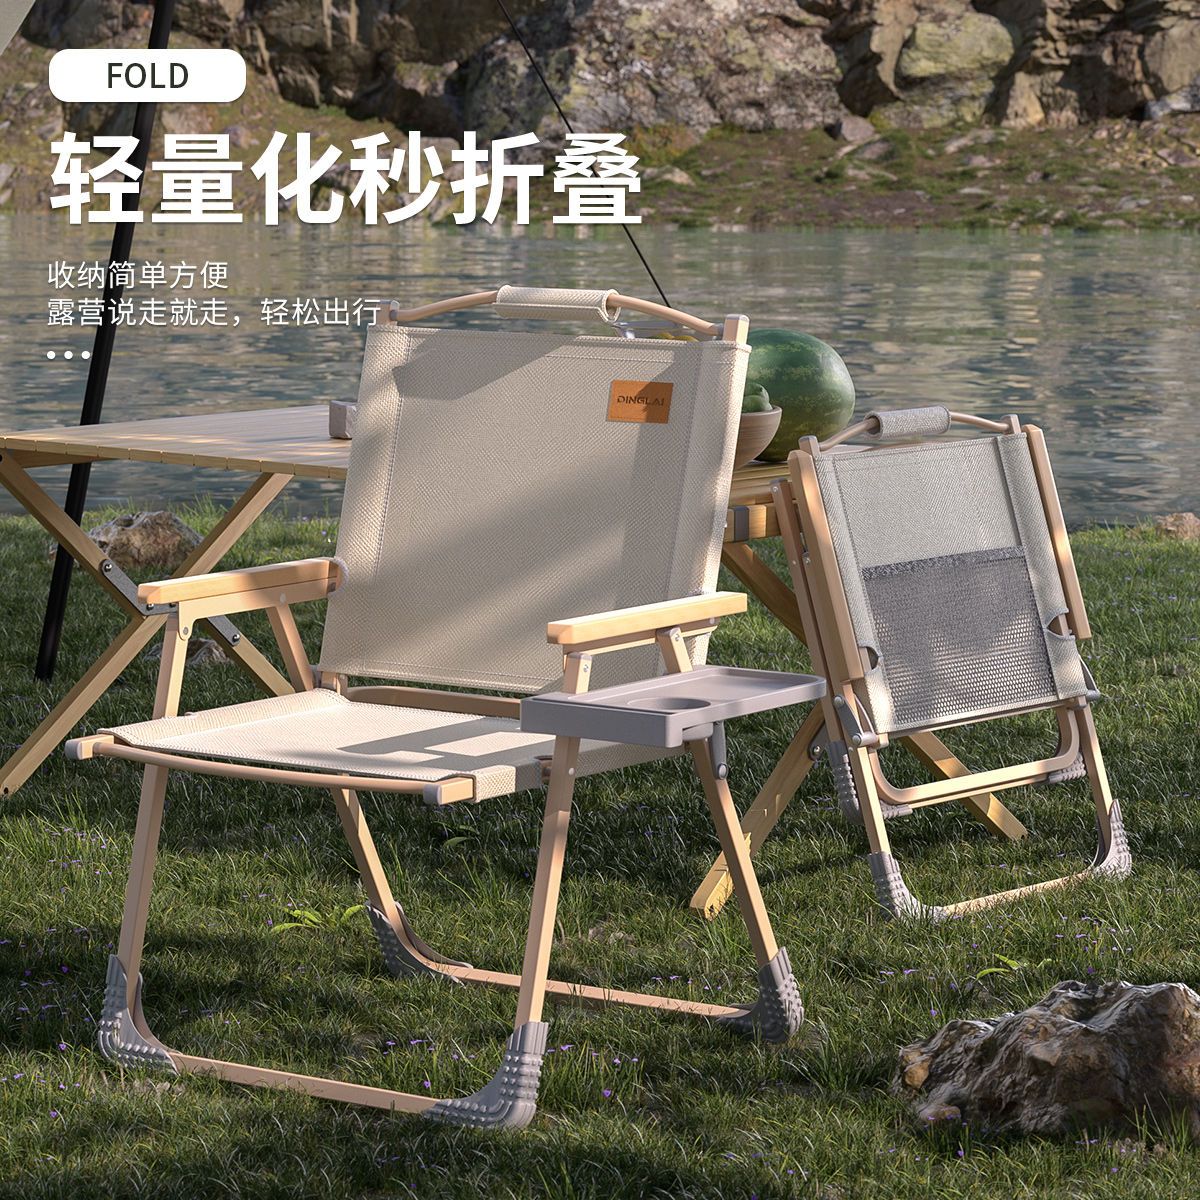 克米特椅露營戶外折疊椅便攜式椅子釣魚休閑椅靠背擺攤家用沙灘椅